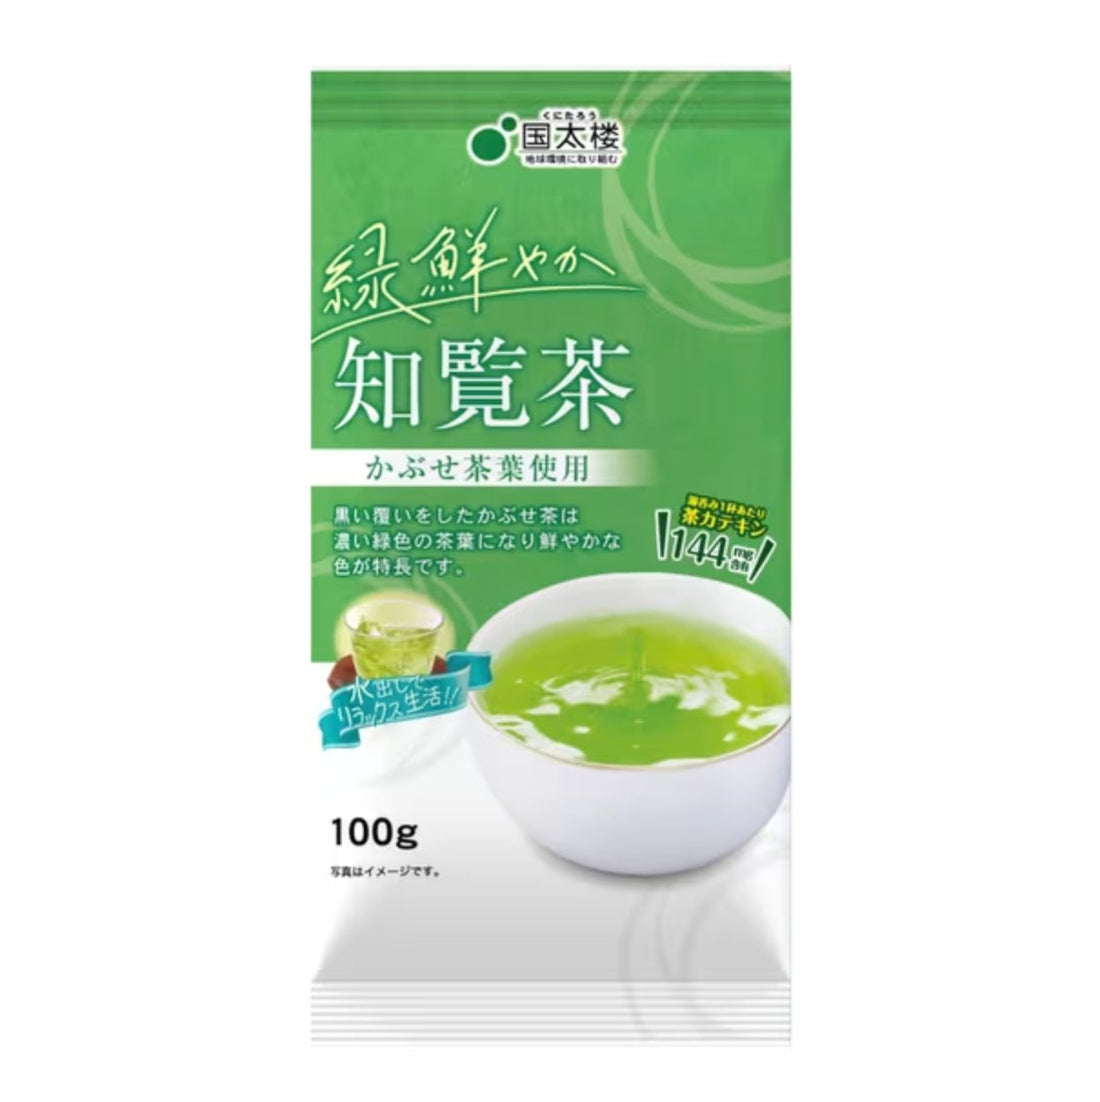 Kunitaro Kagoshima prefecture bright green Chiran tea 100g - NihonMura